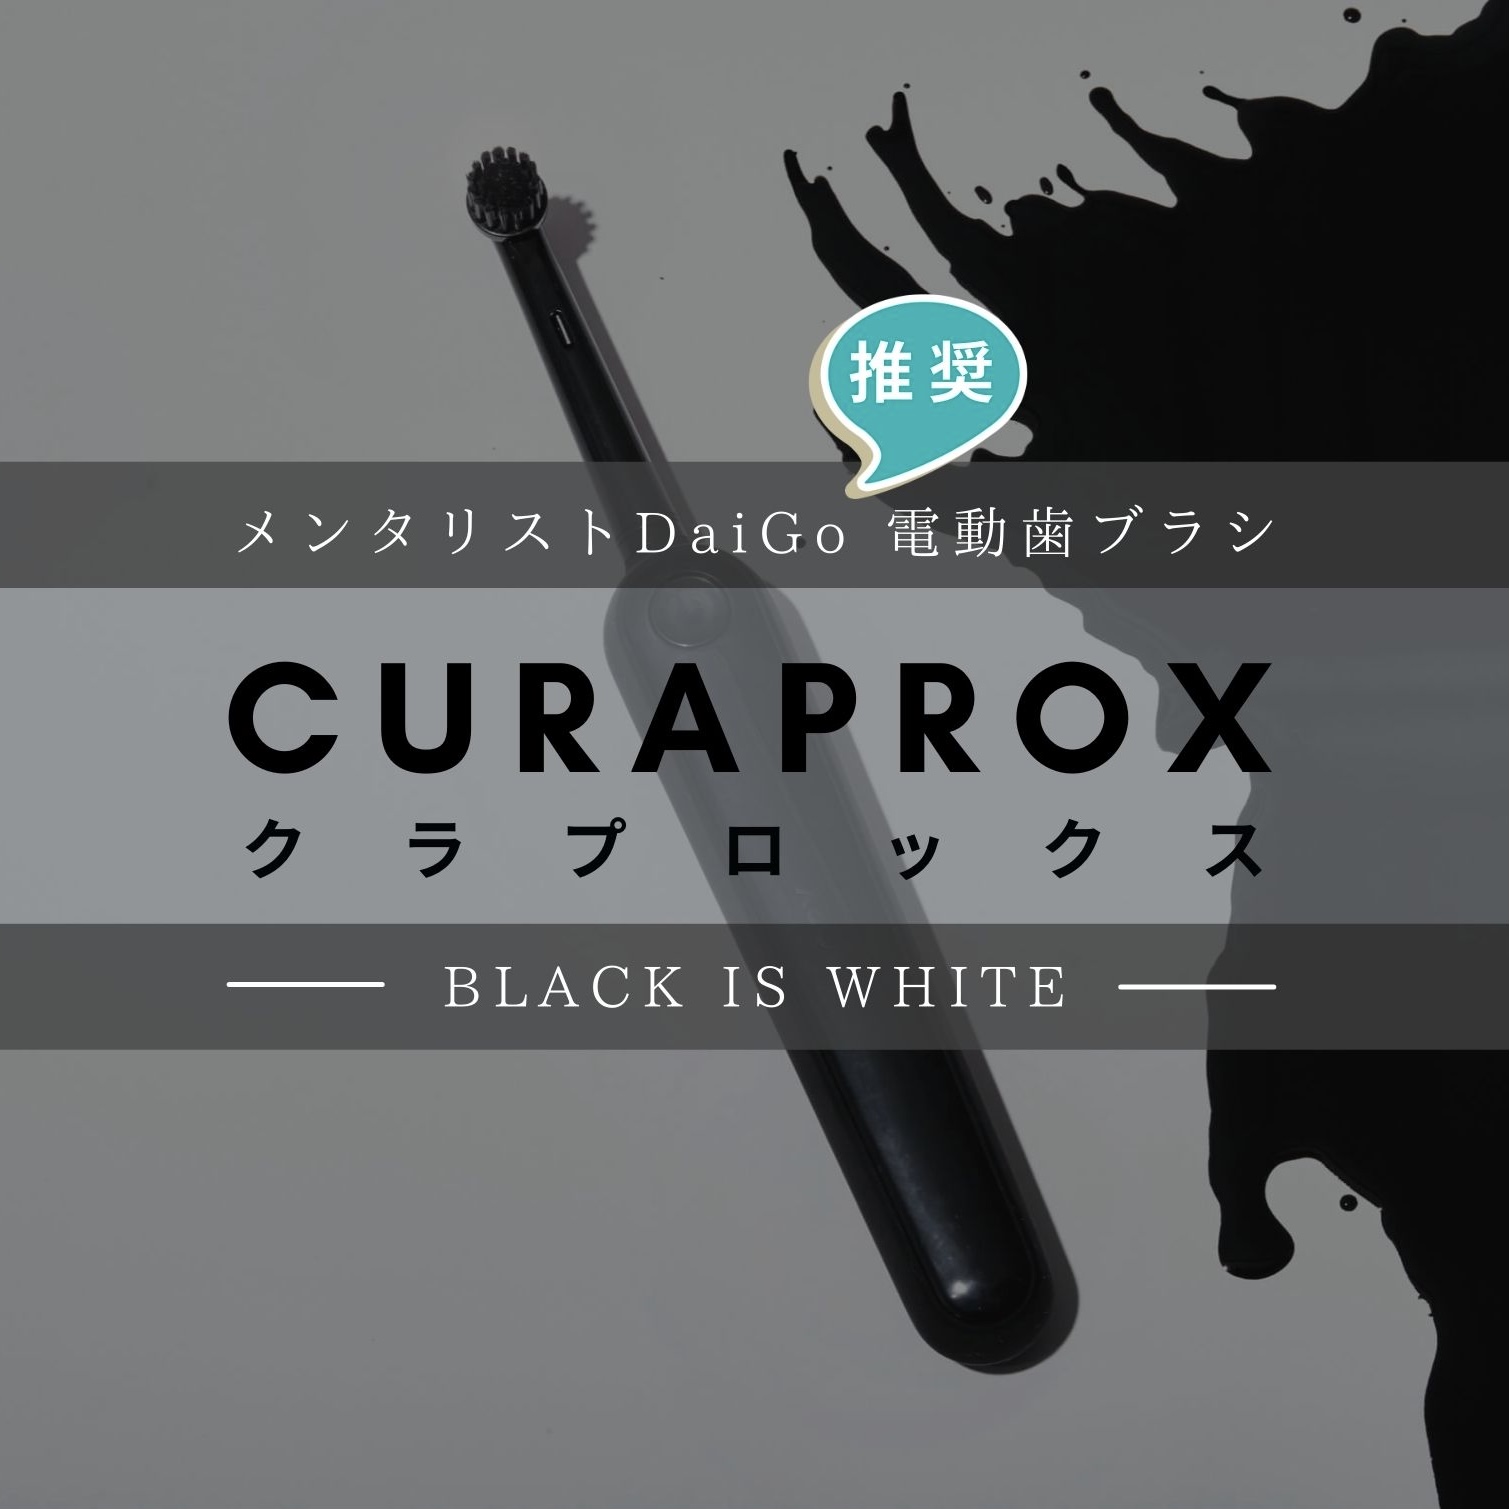 【メンタリストDaiGo】推奨電動歯ブラシ『CURAPROX ブラックイズホワイト』